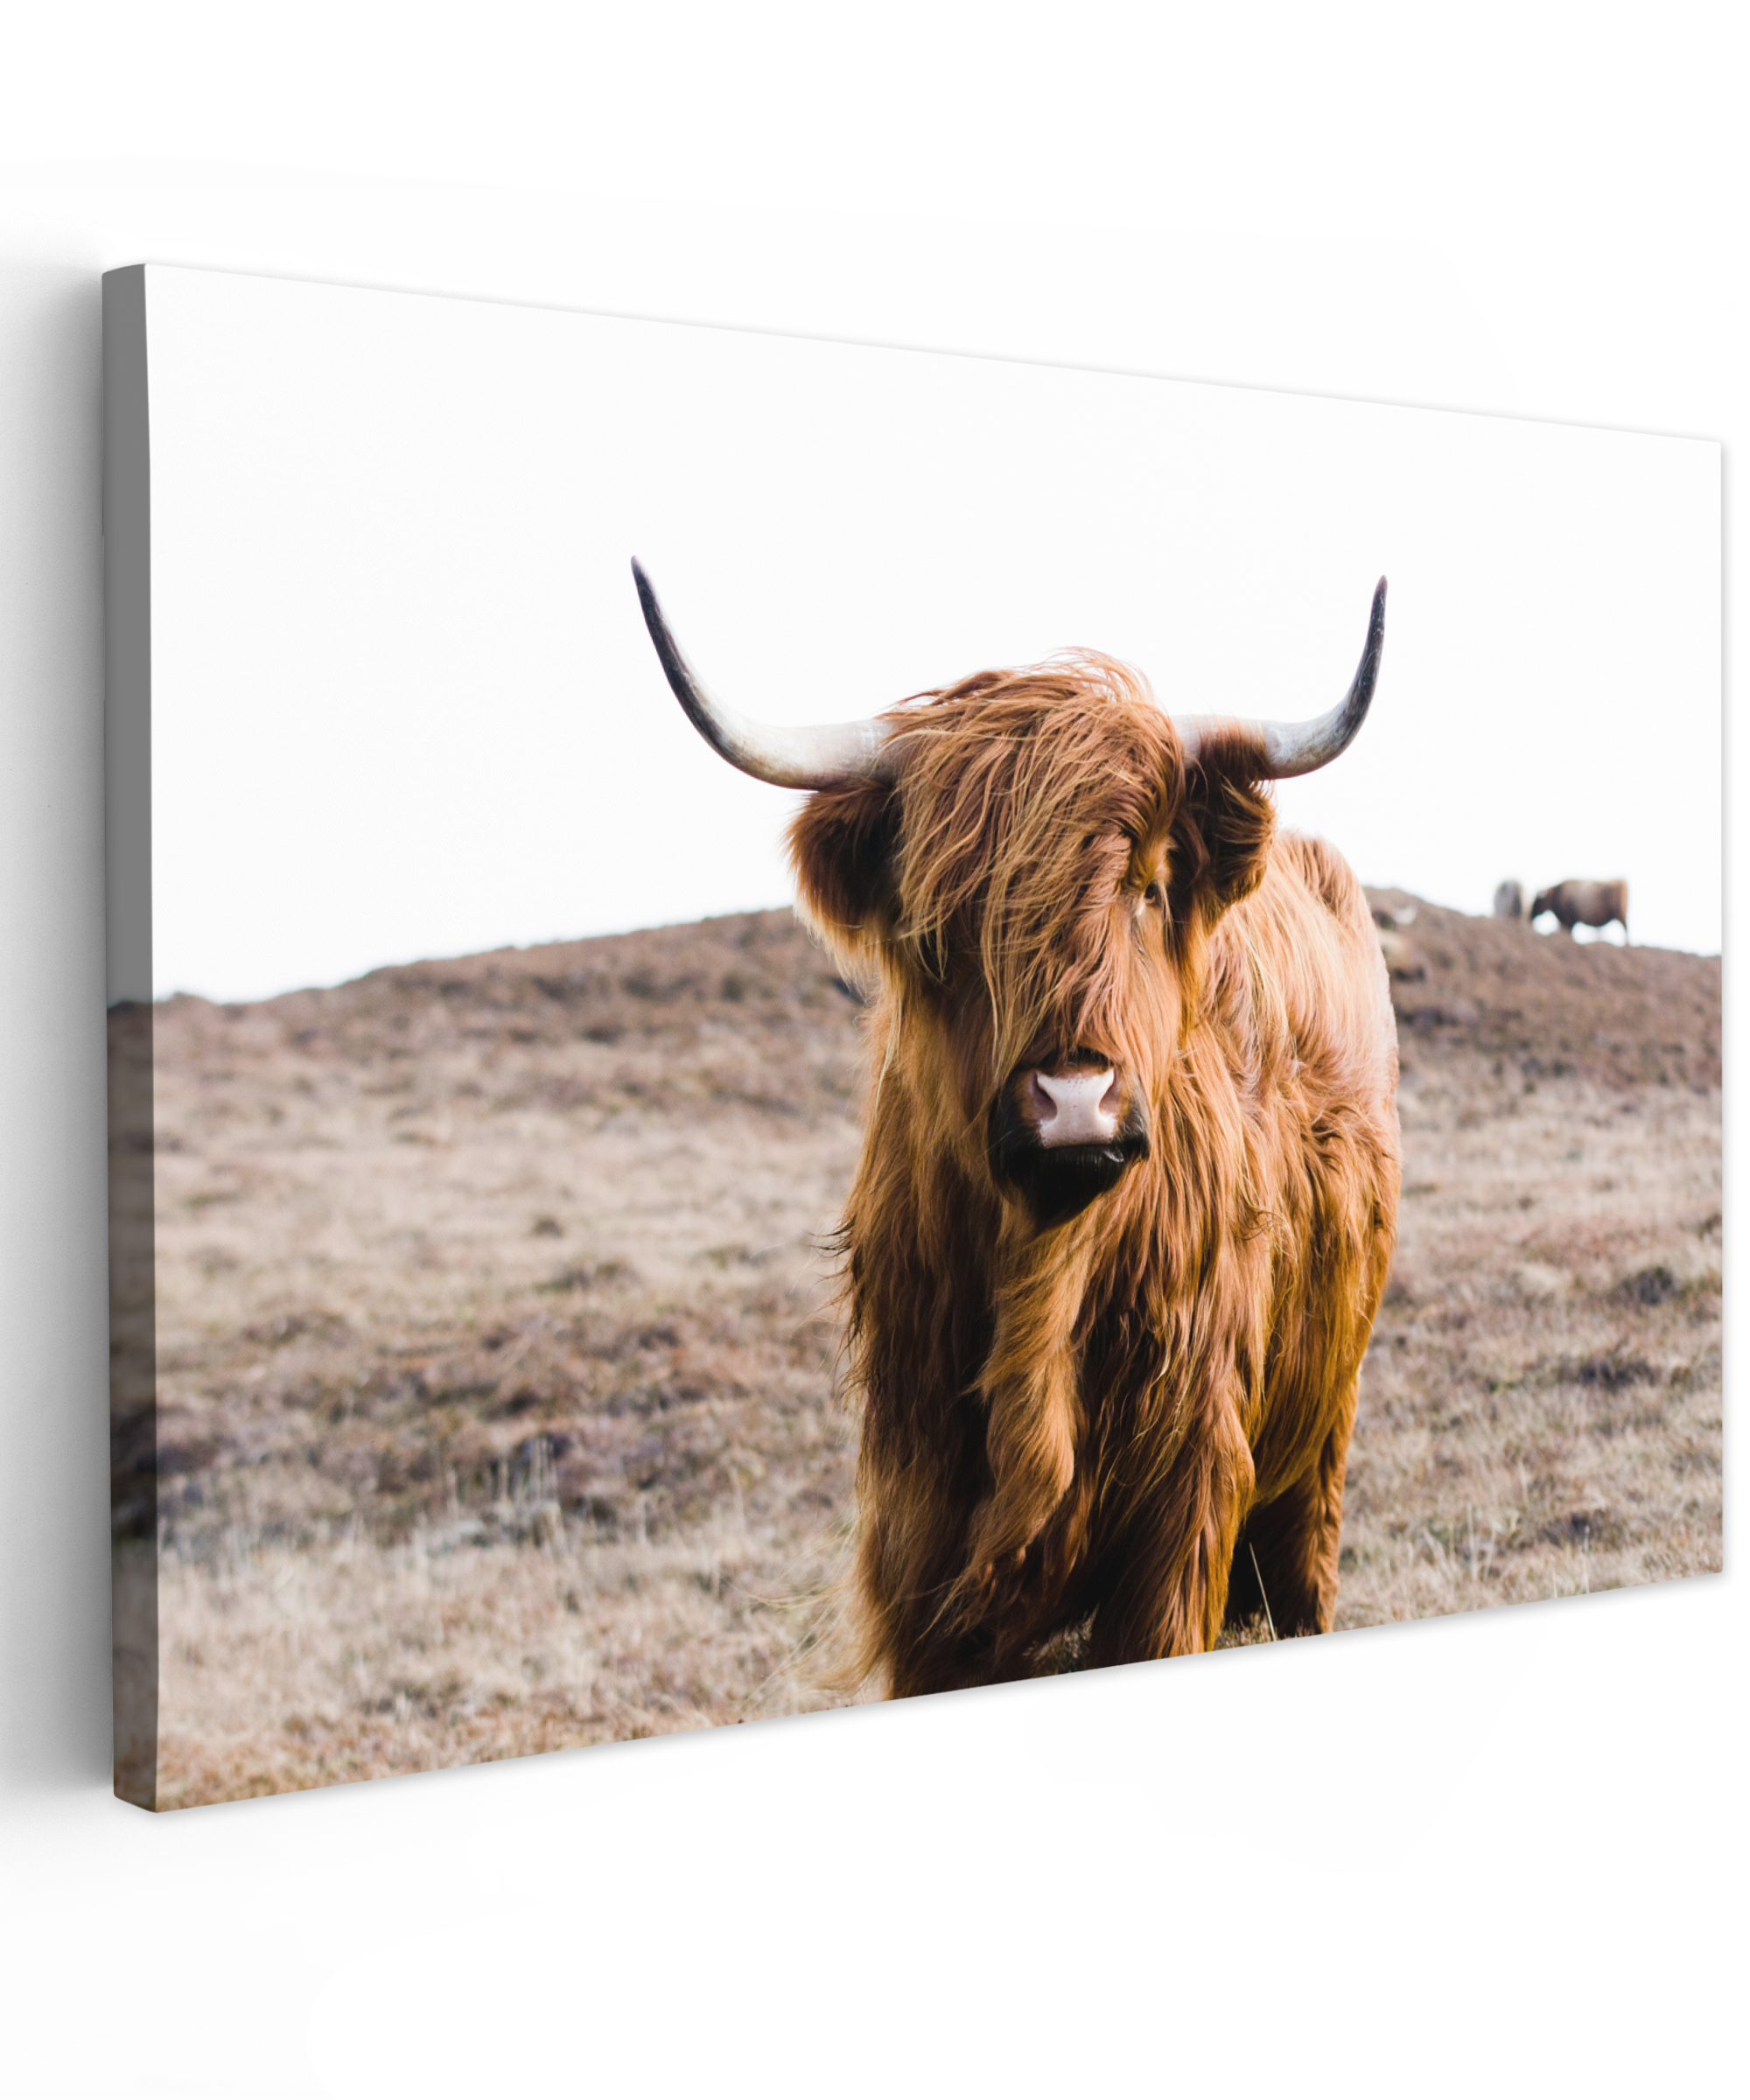 Tableau sur toile - Highlander écossais - Paysage - Vache - Brun - Animaux - Nature